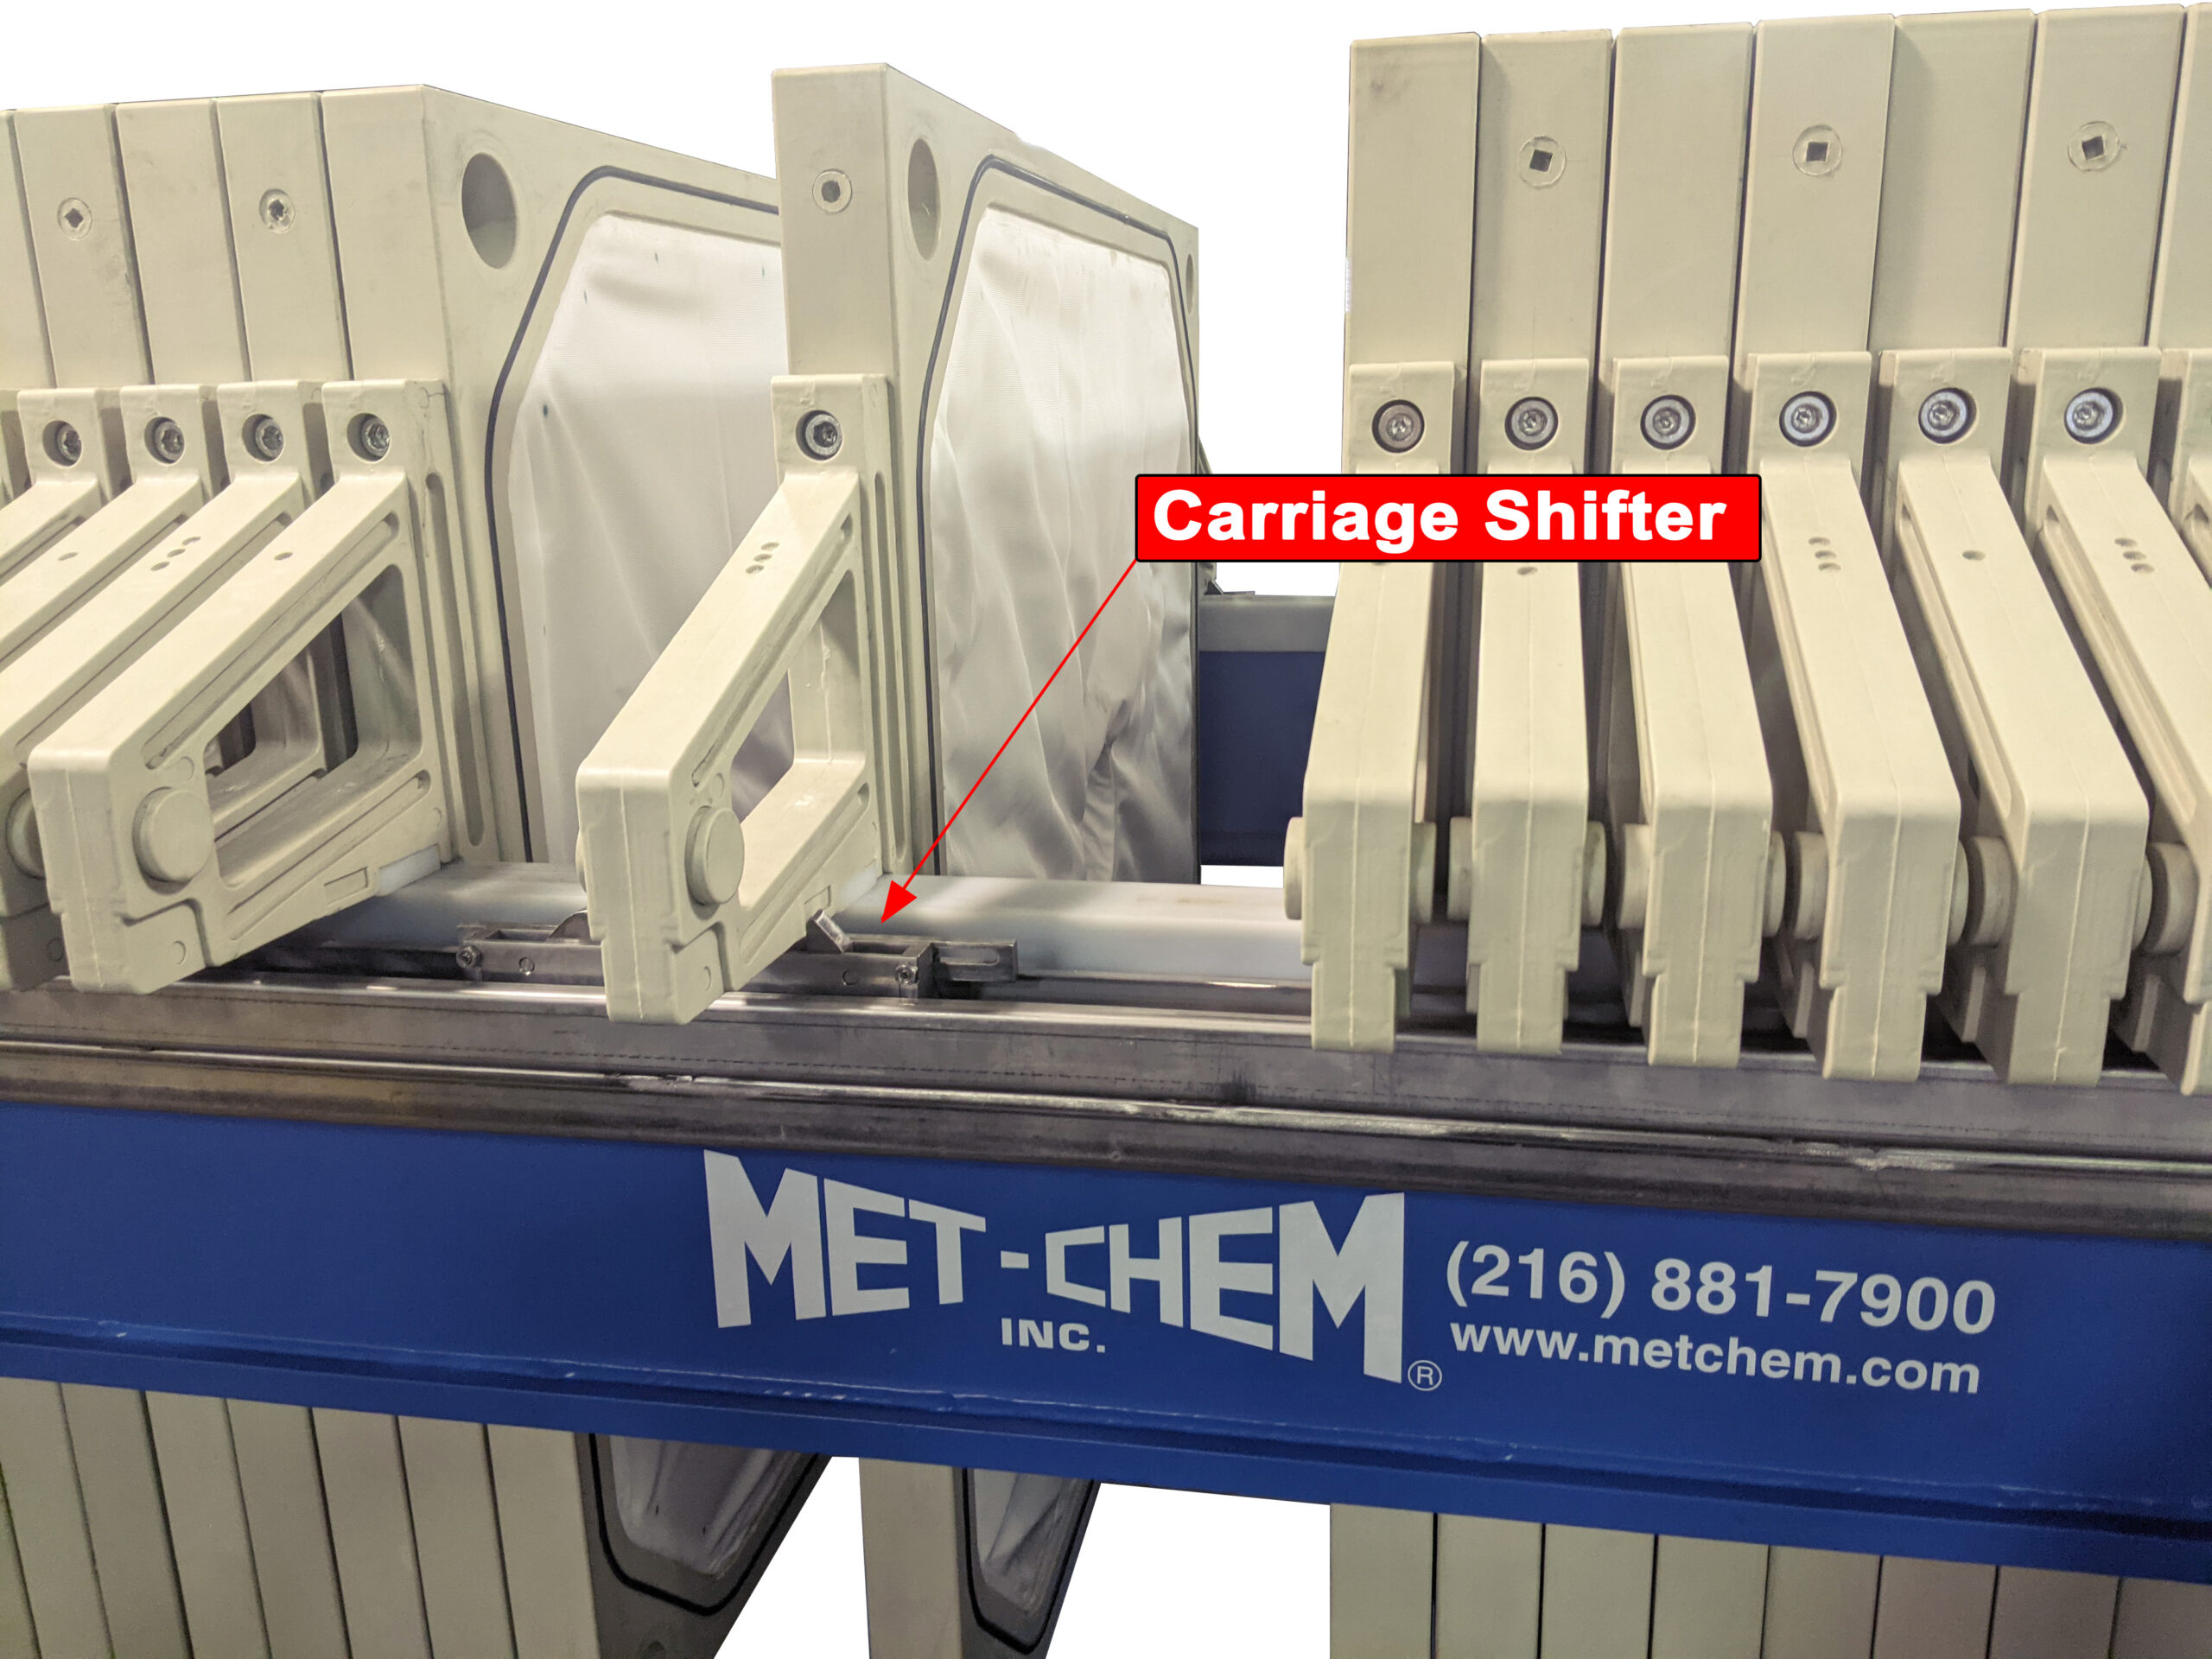 Filter Press Manufacturer, Met-Chem Filter Press